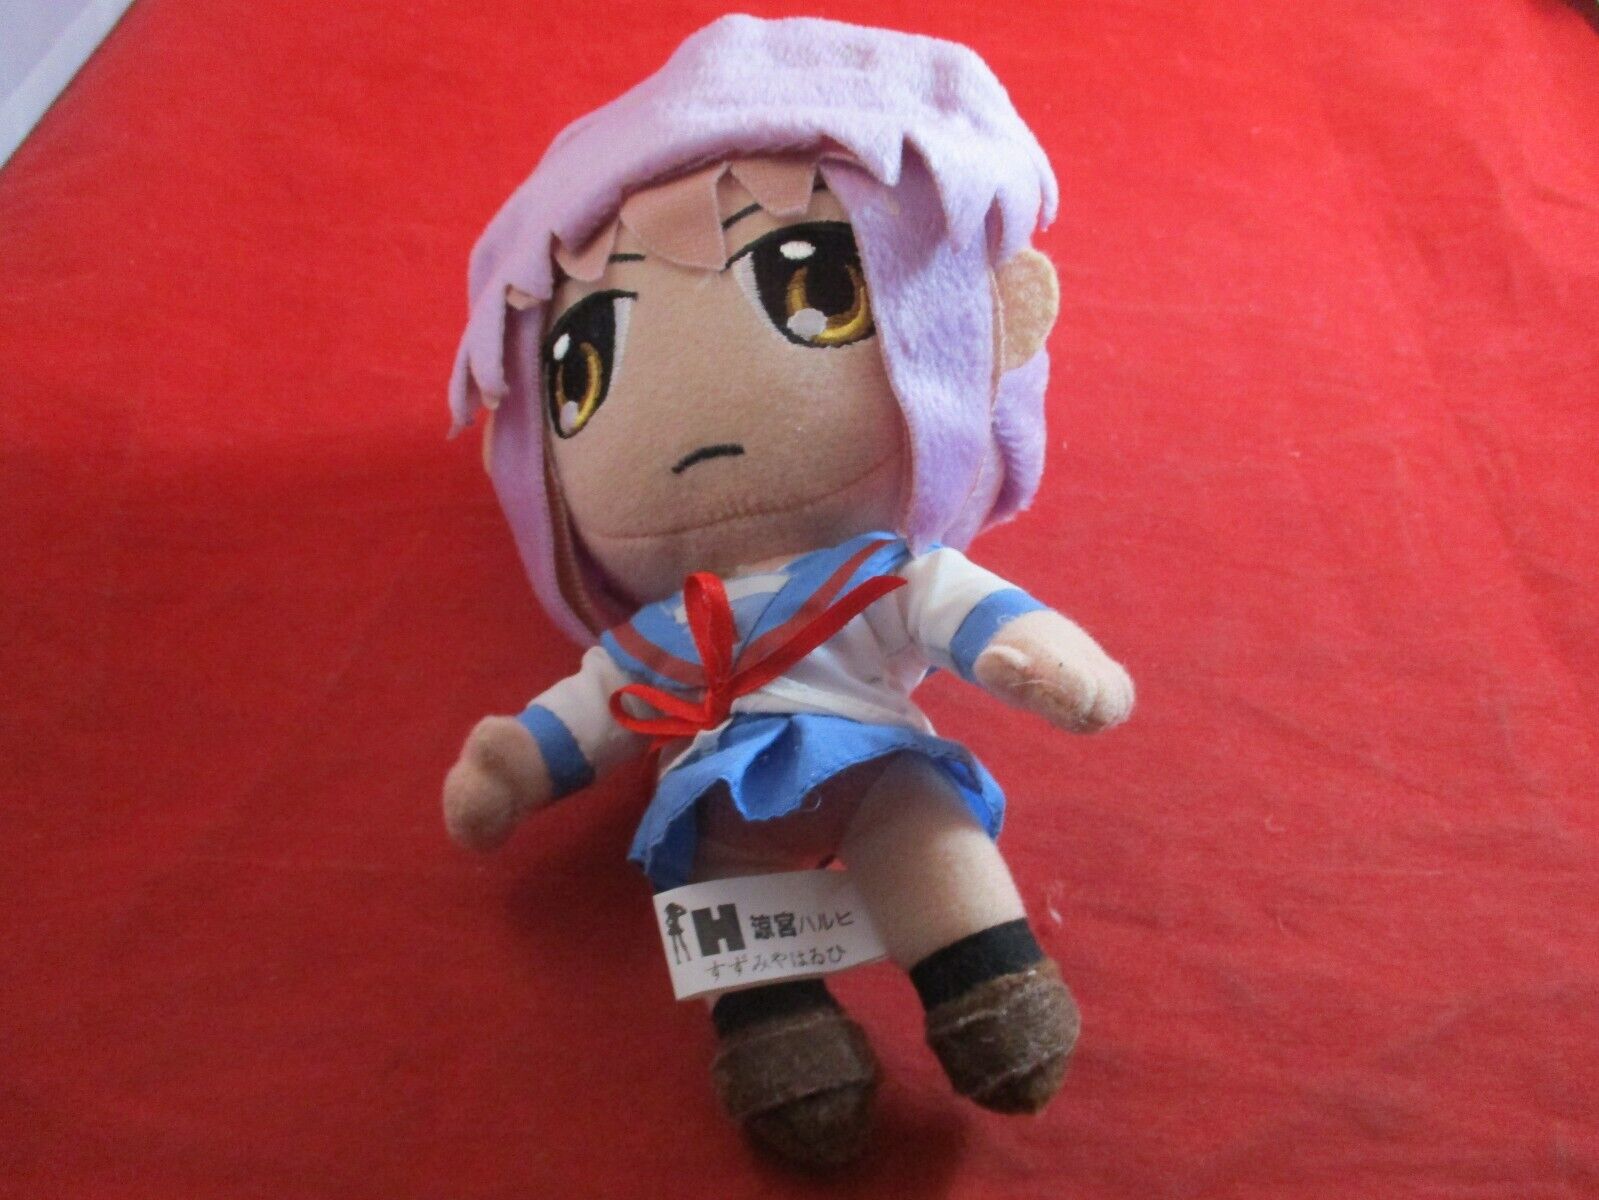 Yuki Nagato - Haruhi Suzumiya Manga Banpresto Japanese Plush Stuffed Toy Figure